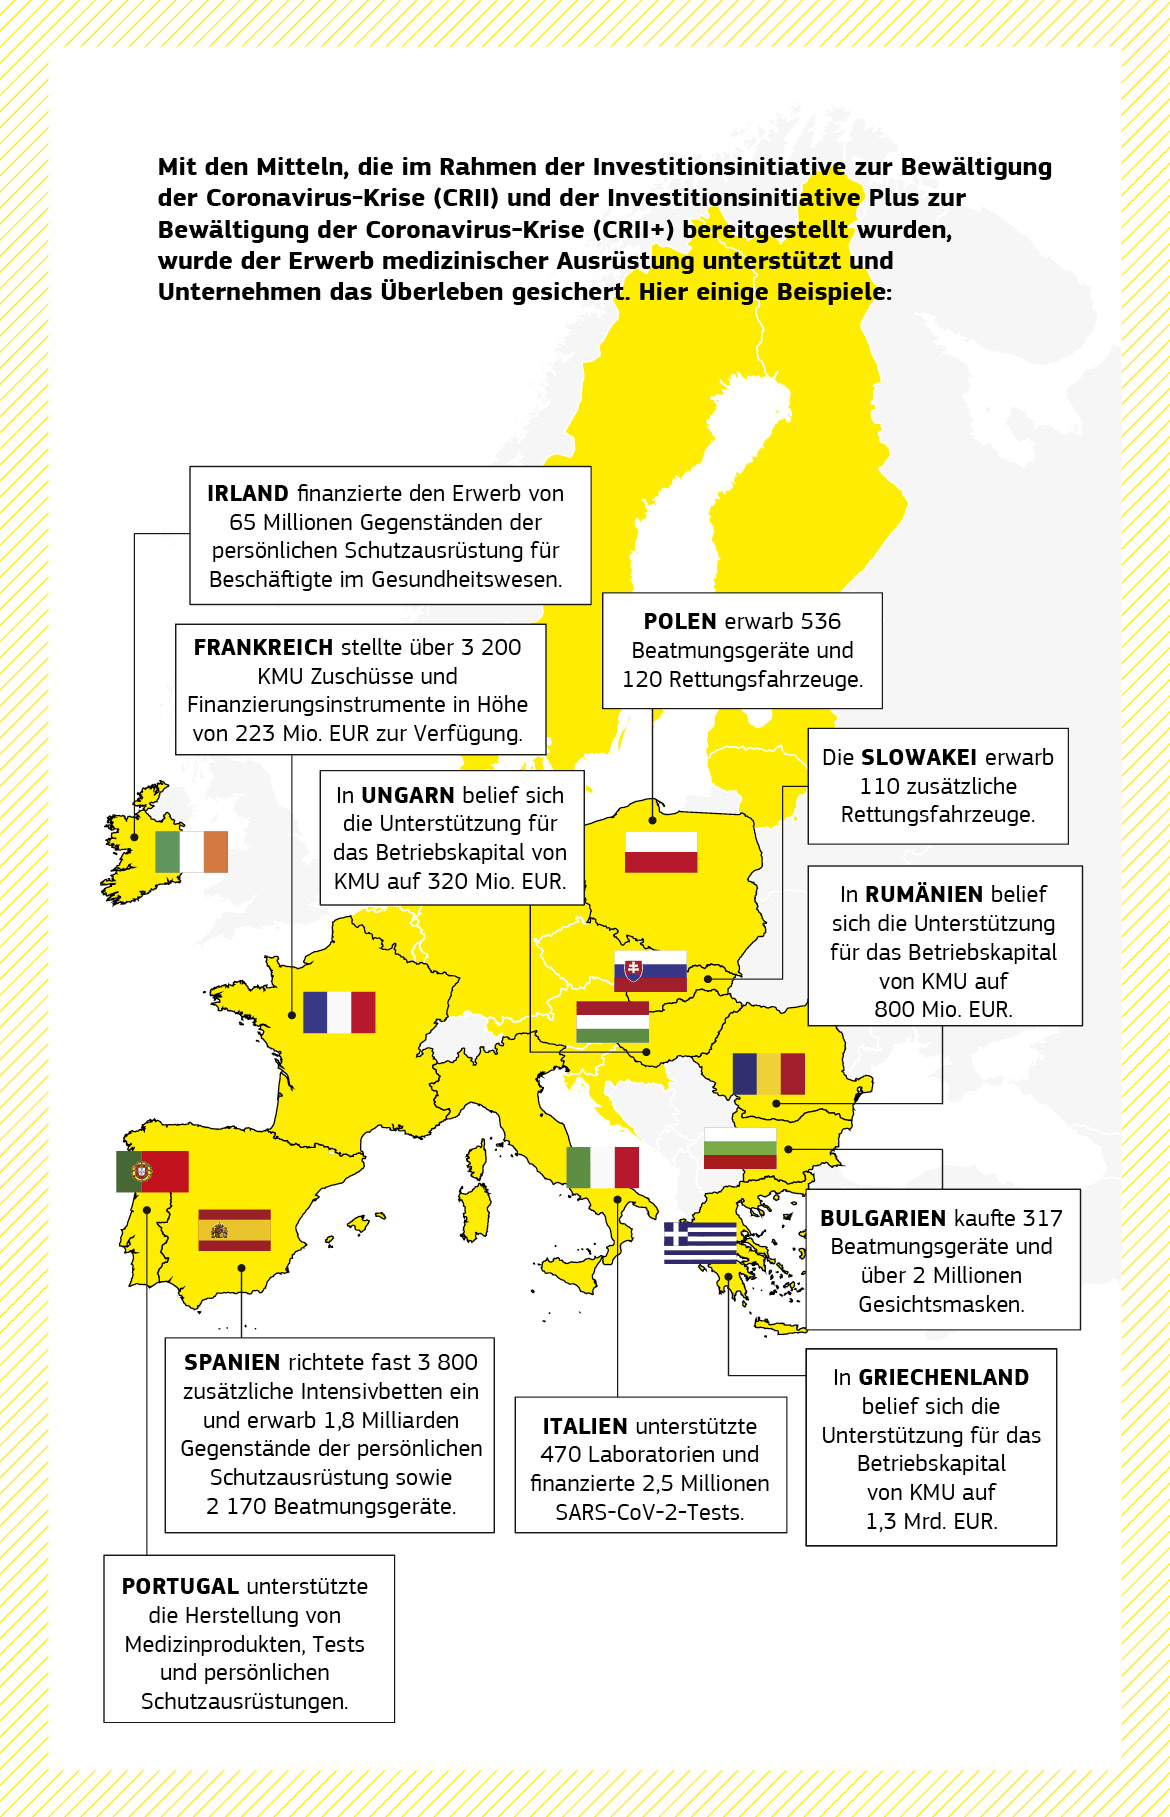 Übersichtslandkarte zu einer Reihe von Unterstützungsprojekten zur Bewältigung der Pandemie, die im Rahmen der Investitionsinitiative zur Bewältigung der Coronavirus-Krise und der Investitionsinitiative Plus zur Bewältigung der Coronavirus-Krise in mehreren EU-Mitgliedstaaten finanziert wurden.